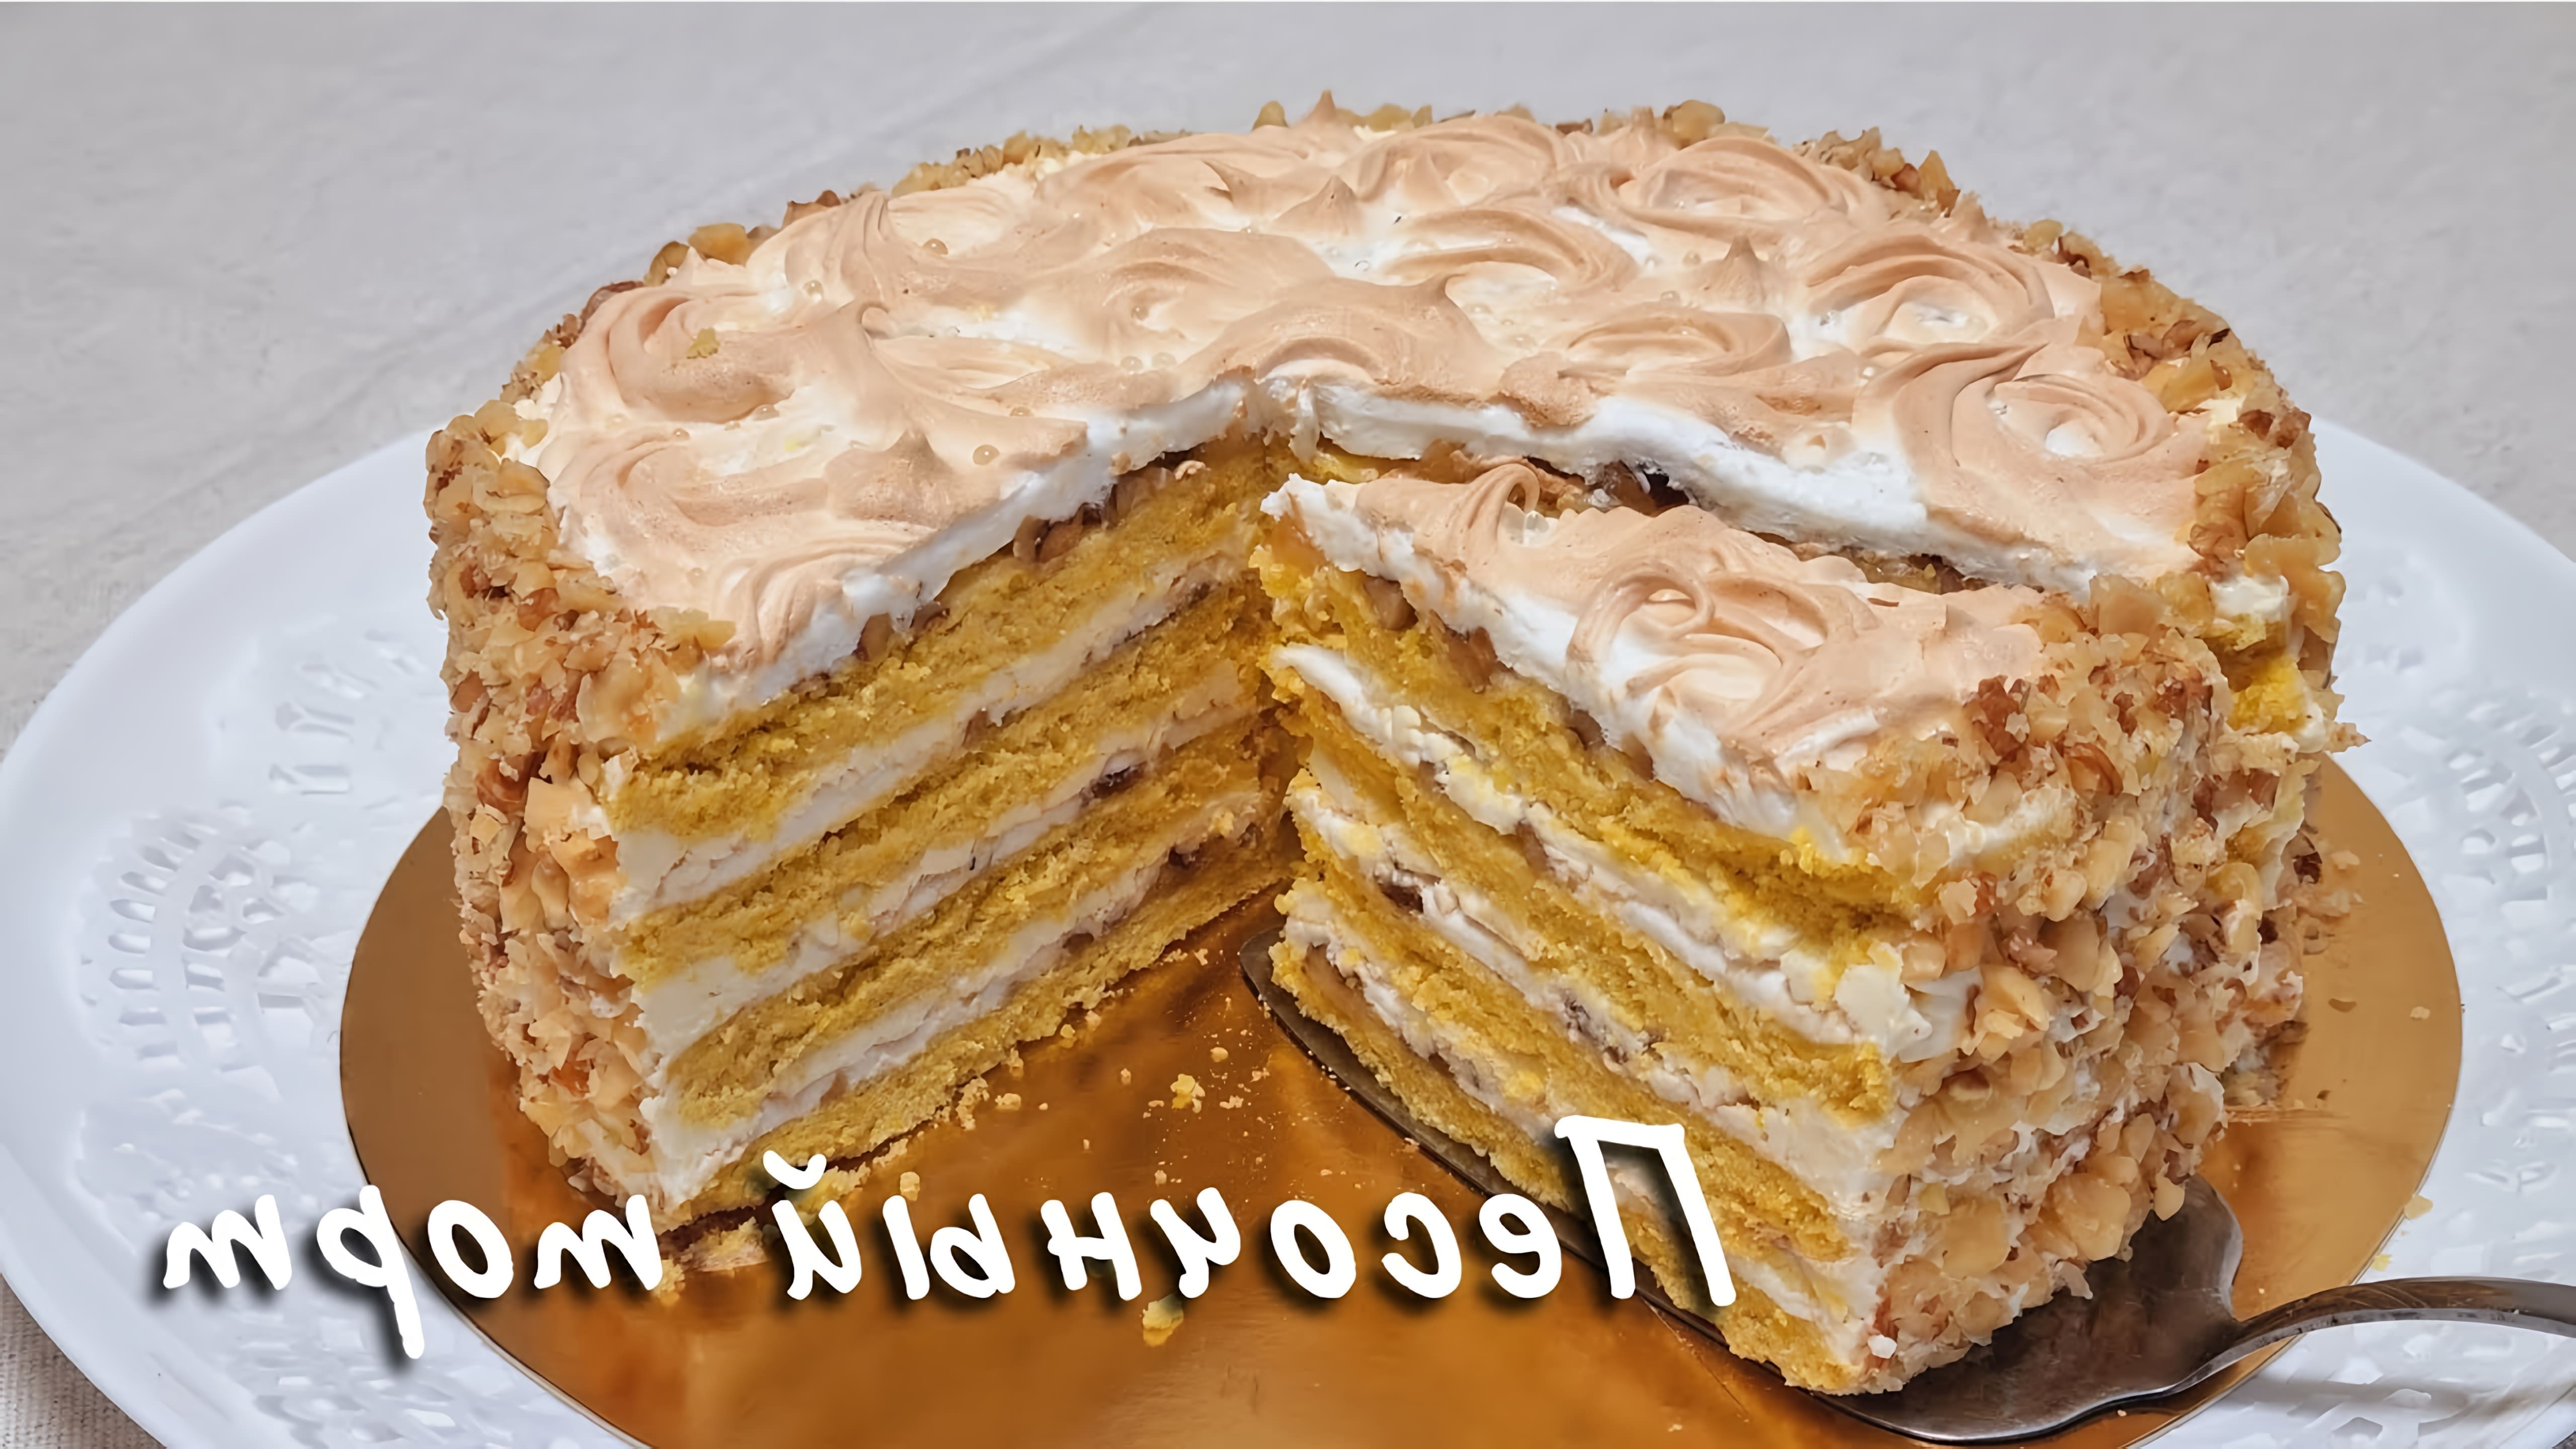 В этом видео демонстрируется рецепт приготовления песочного торта "Киевский"